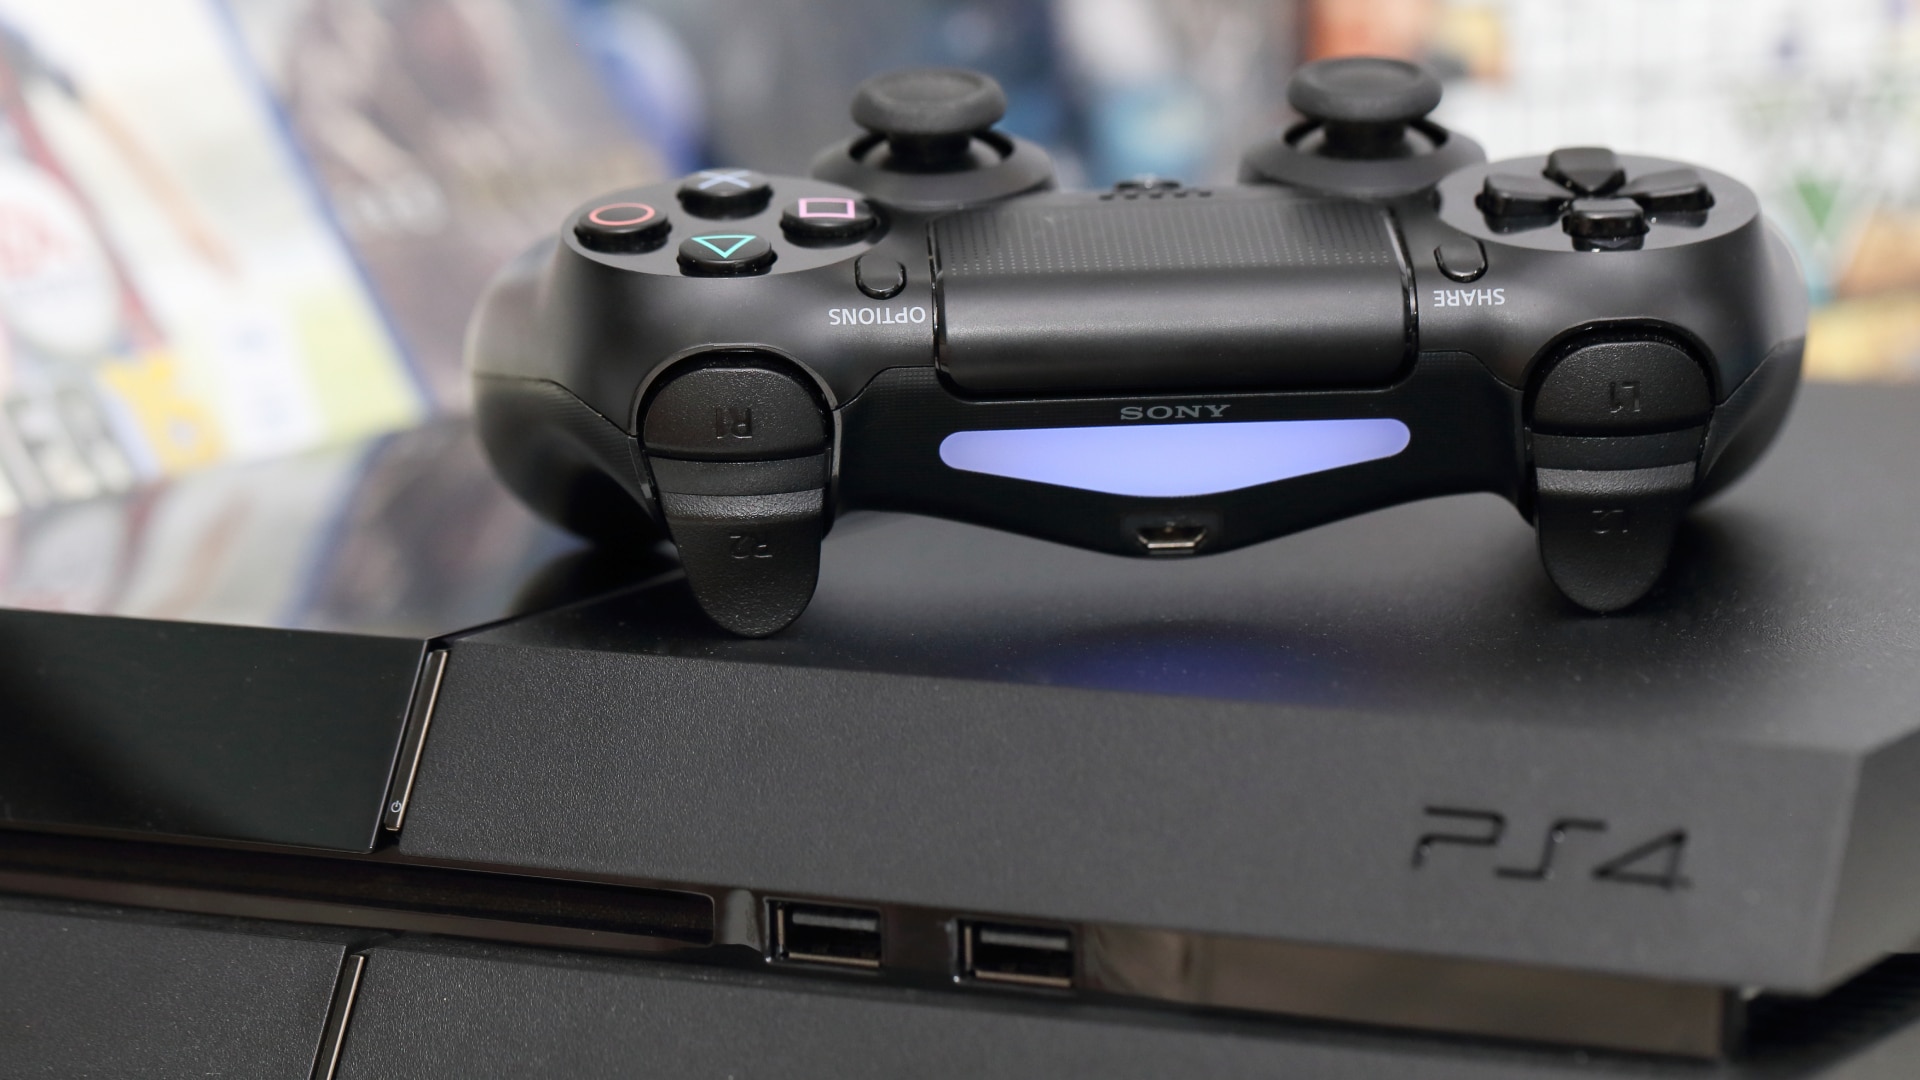 Manette DualShock 4 posée sur le dessus d'une console PS4